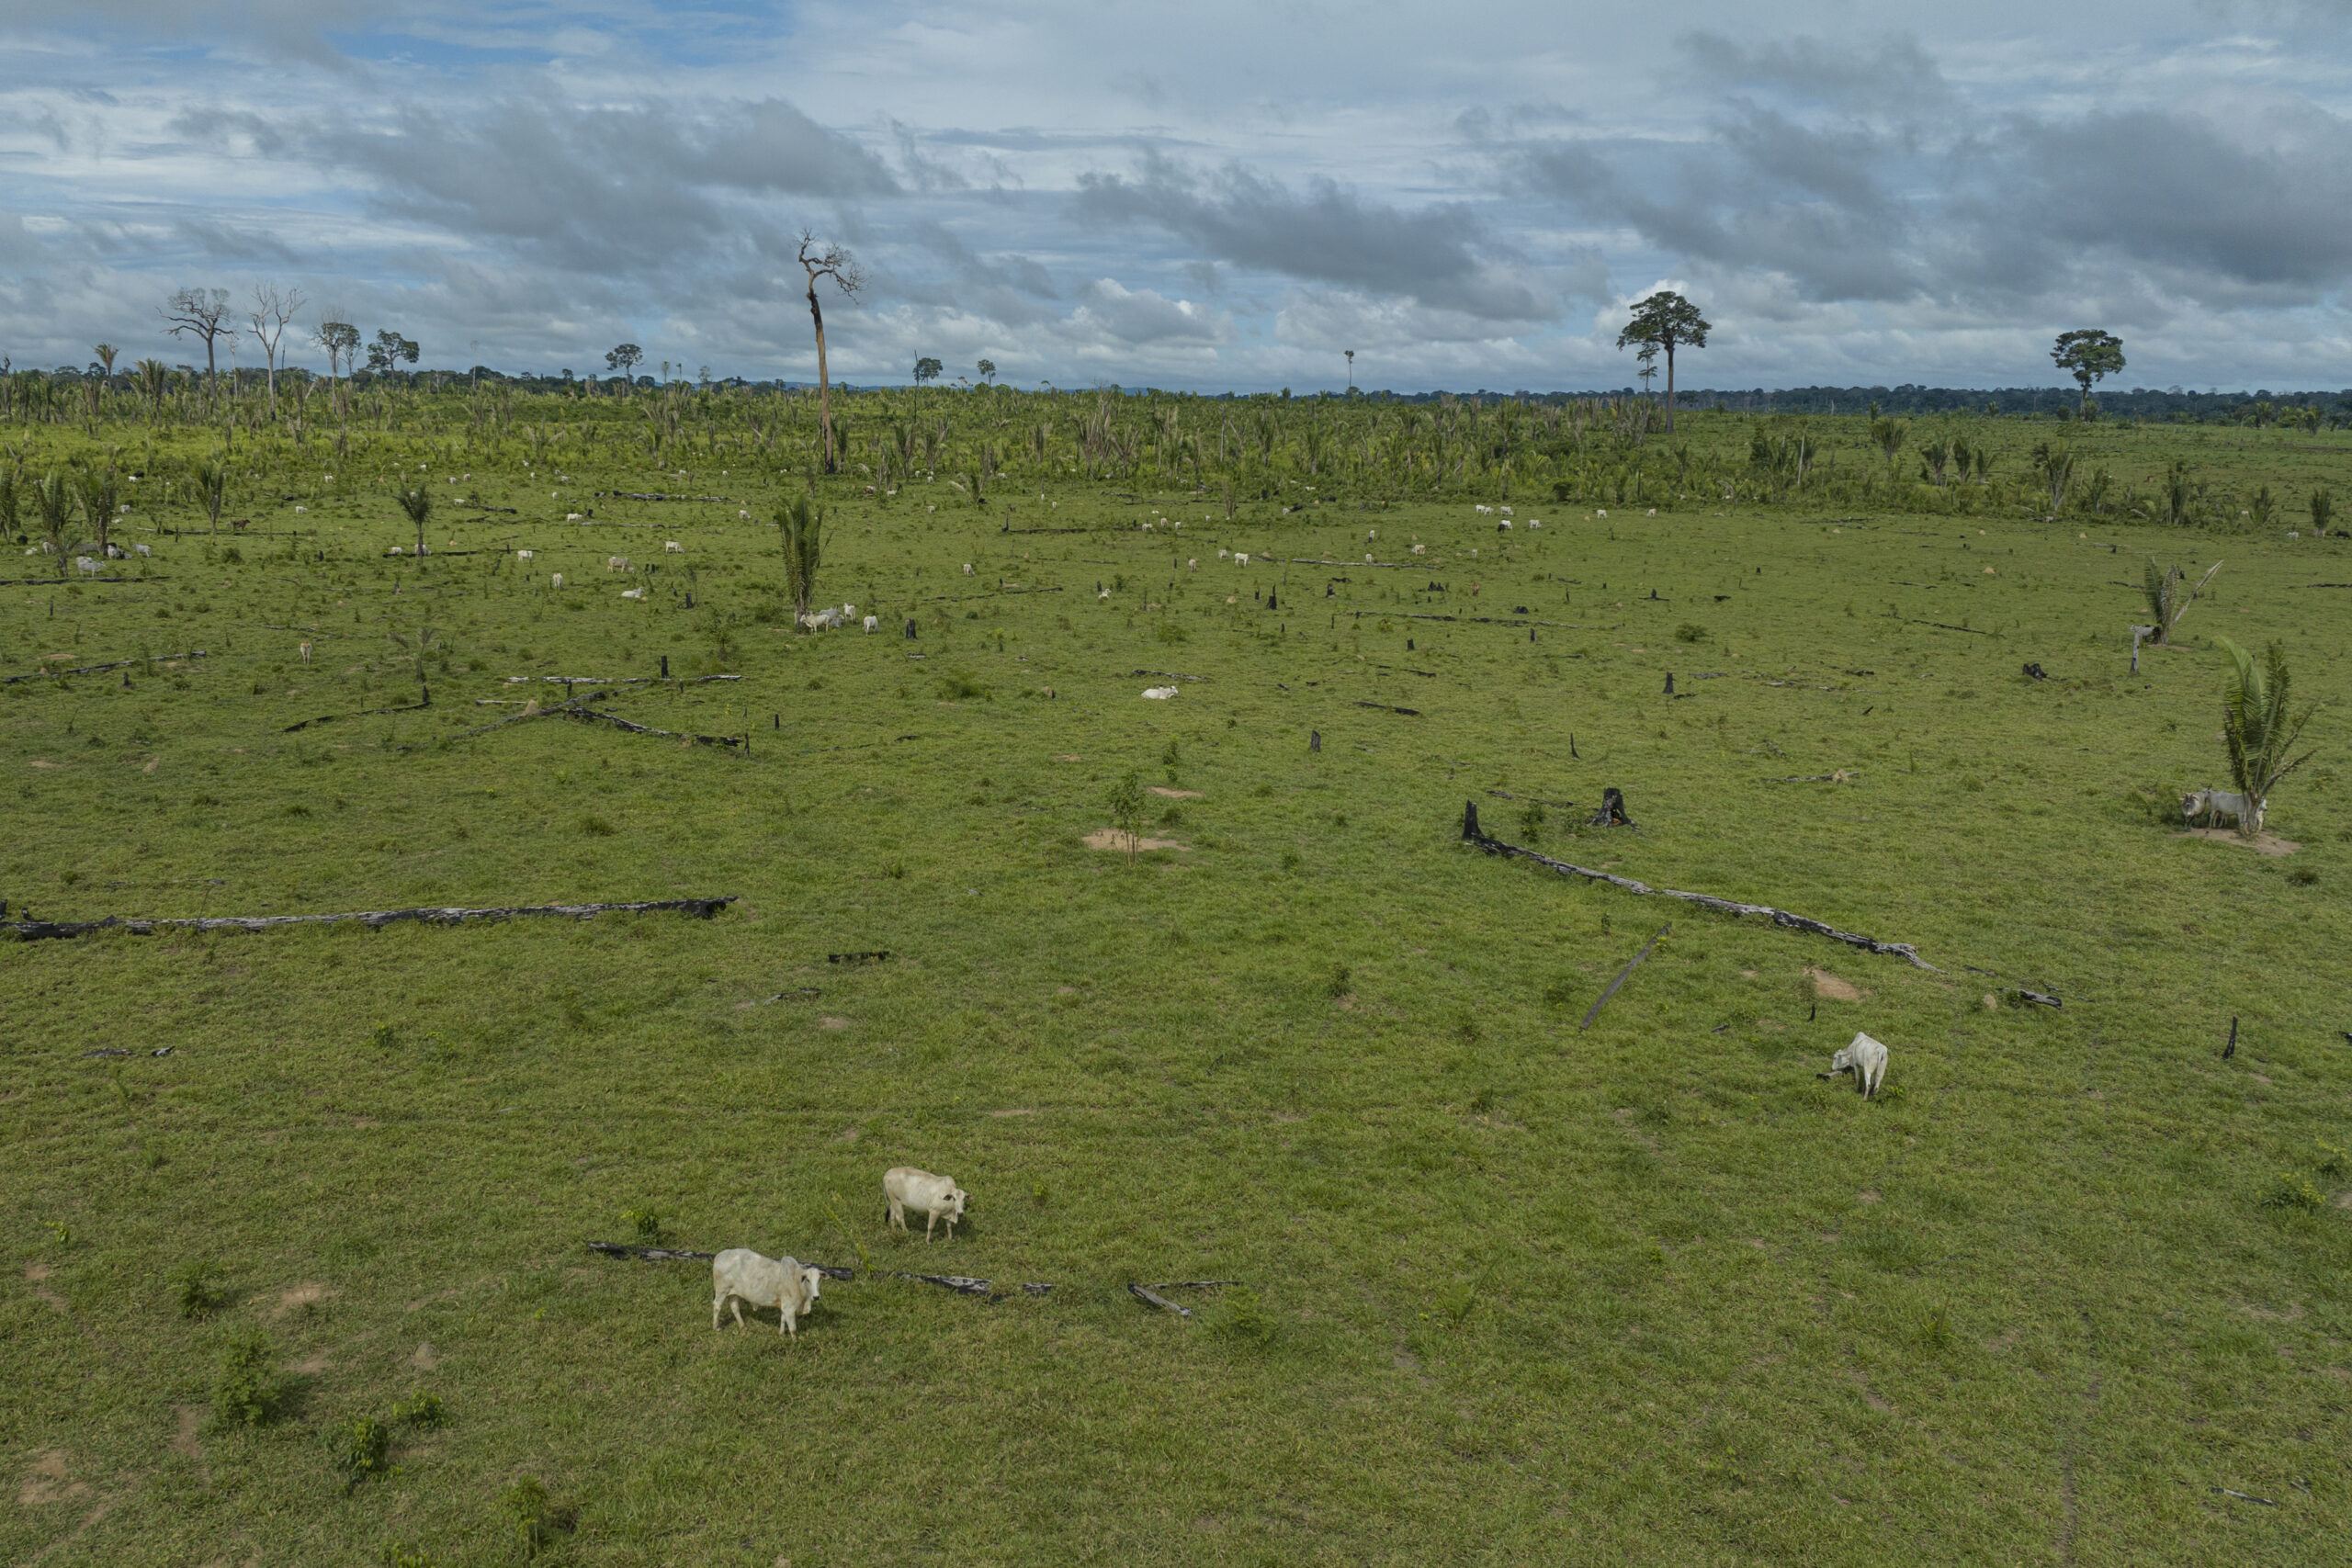 No lugar da floresta em pé, pasto e gado dominam paisagem em parte invadida do Parque Estadual de Guajará Mirim (Foto: Alessandro Falco/Repórter Brasil)